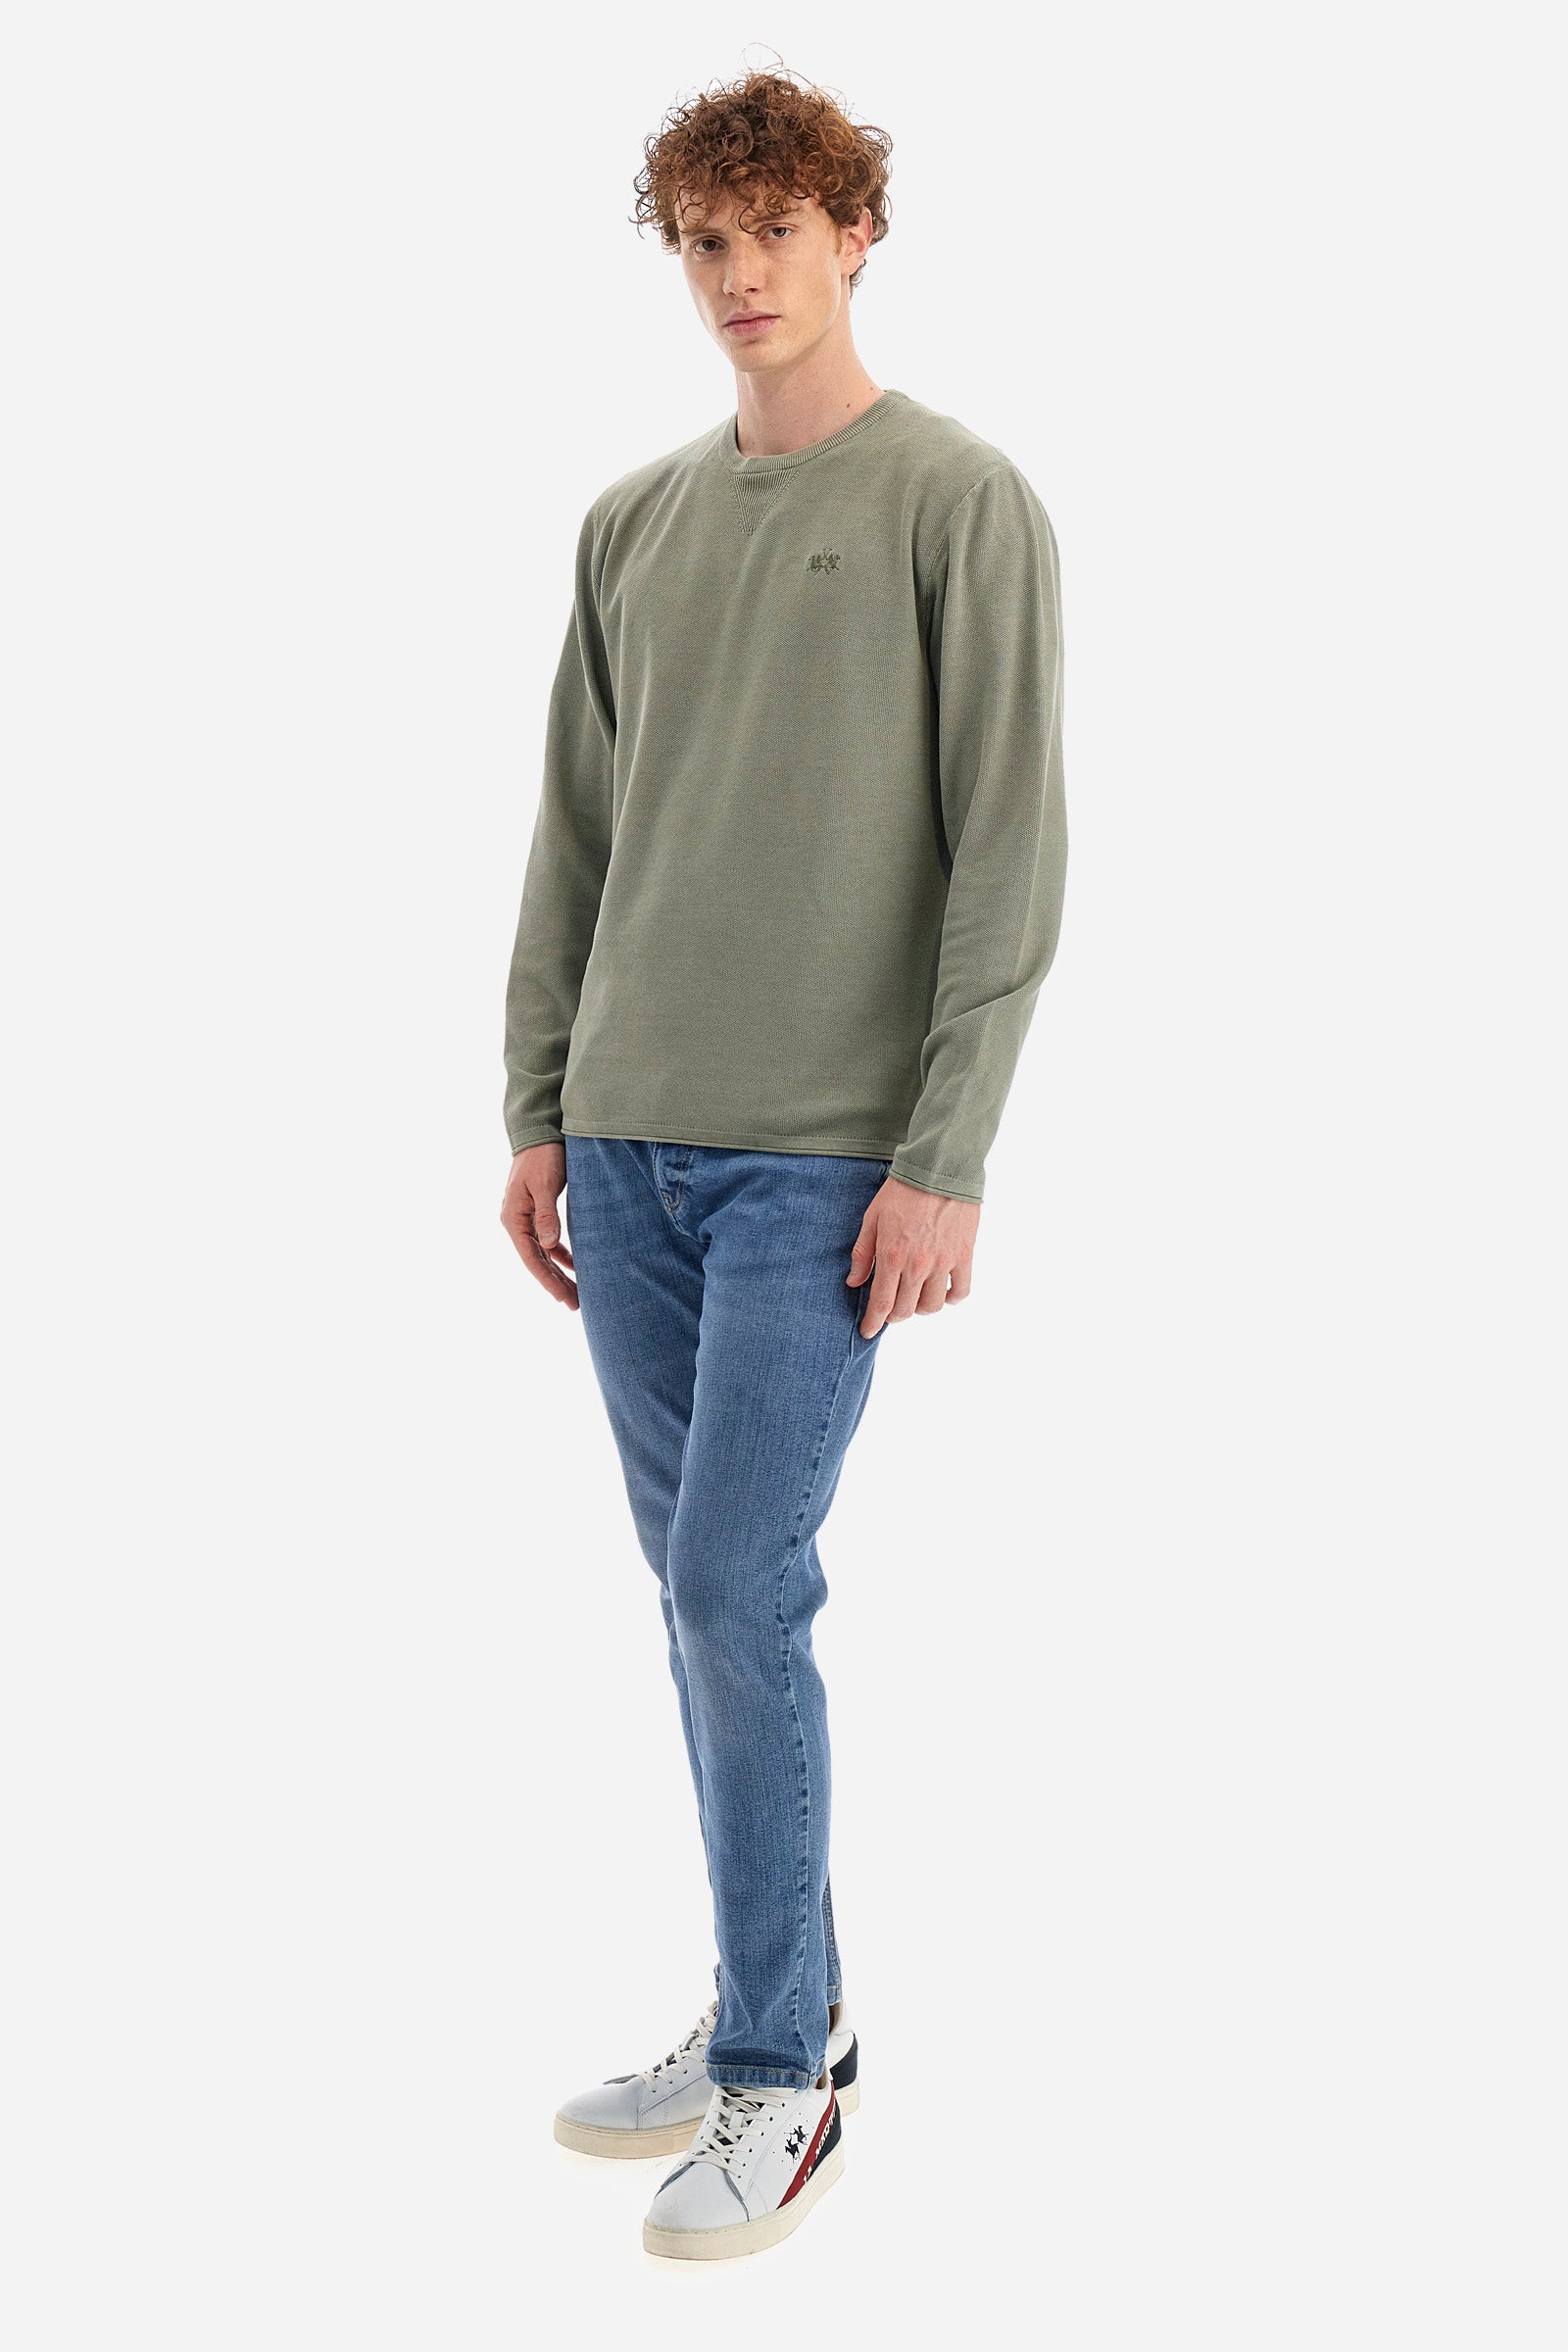 Sweater de algodón de corte recto - Ysmal